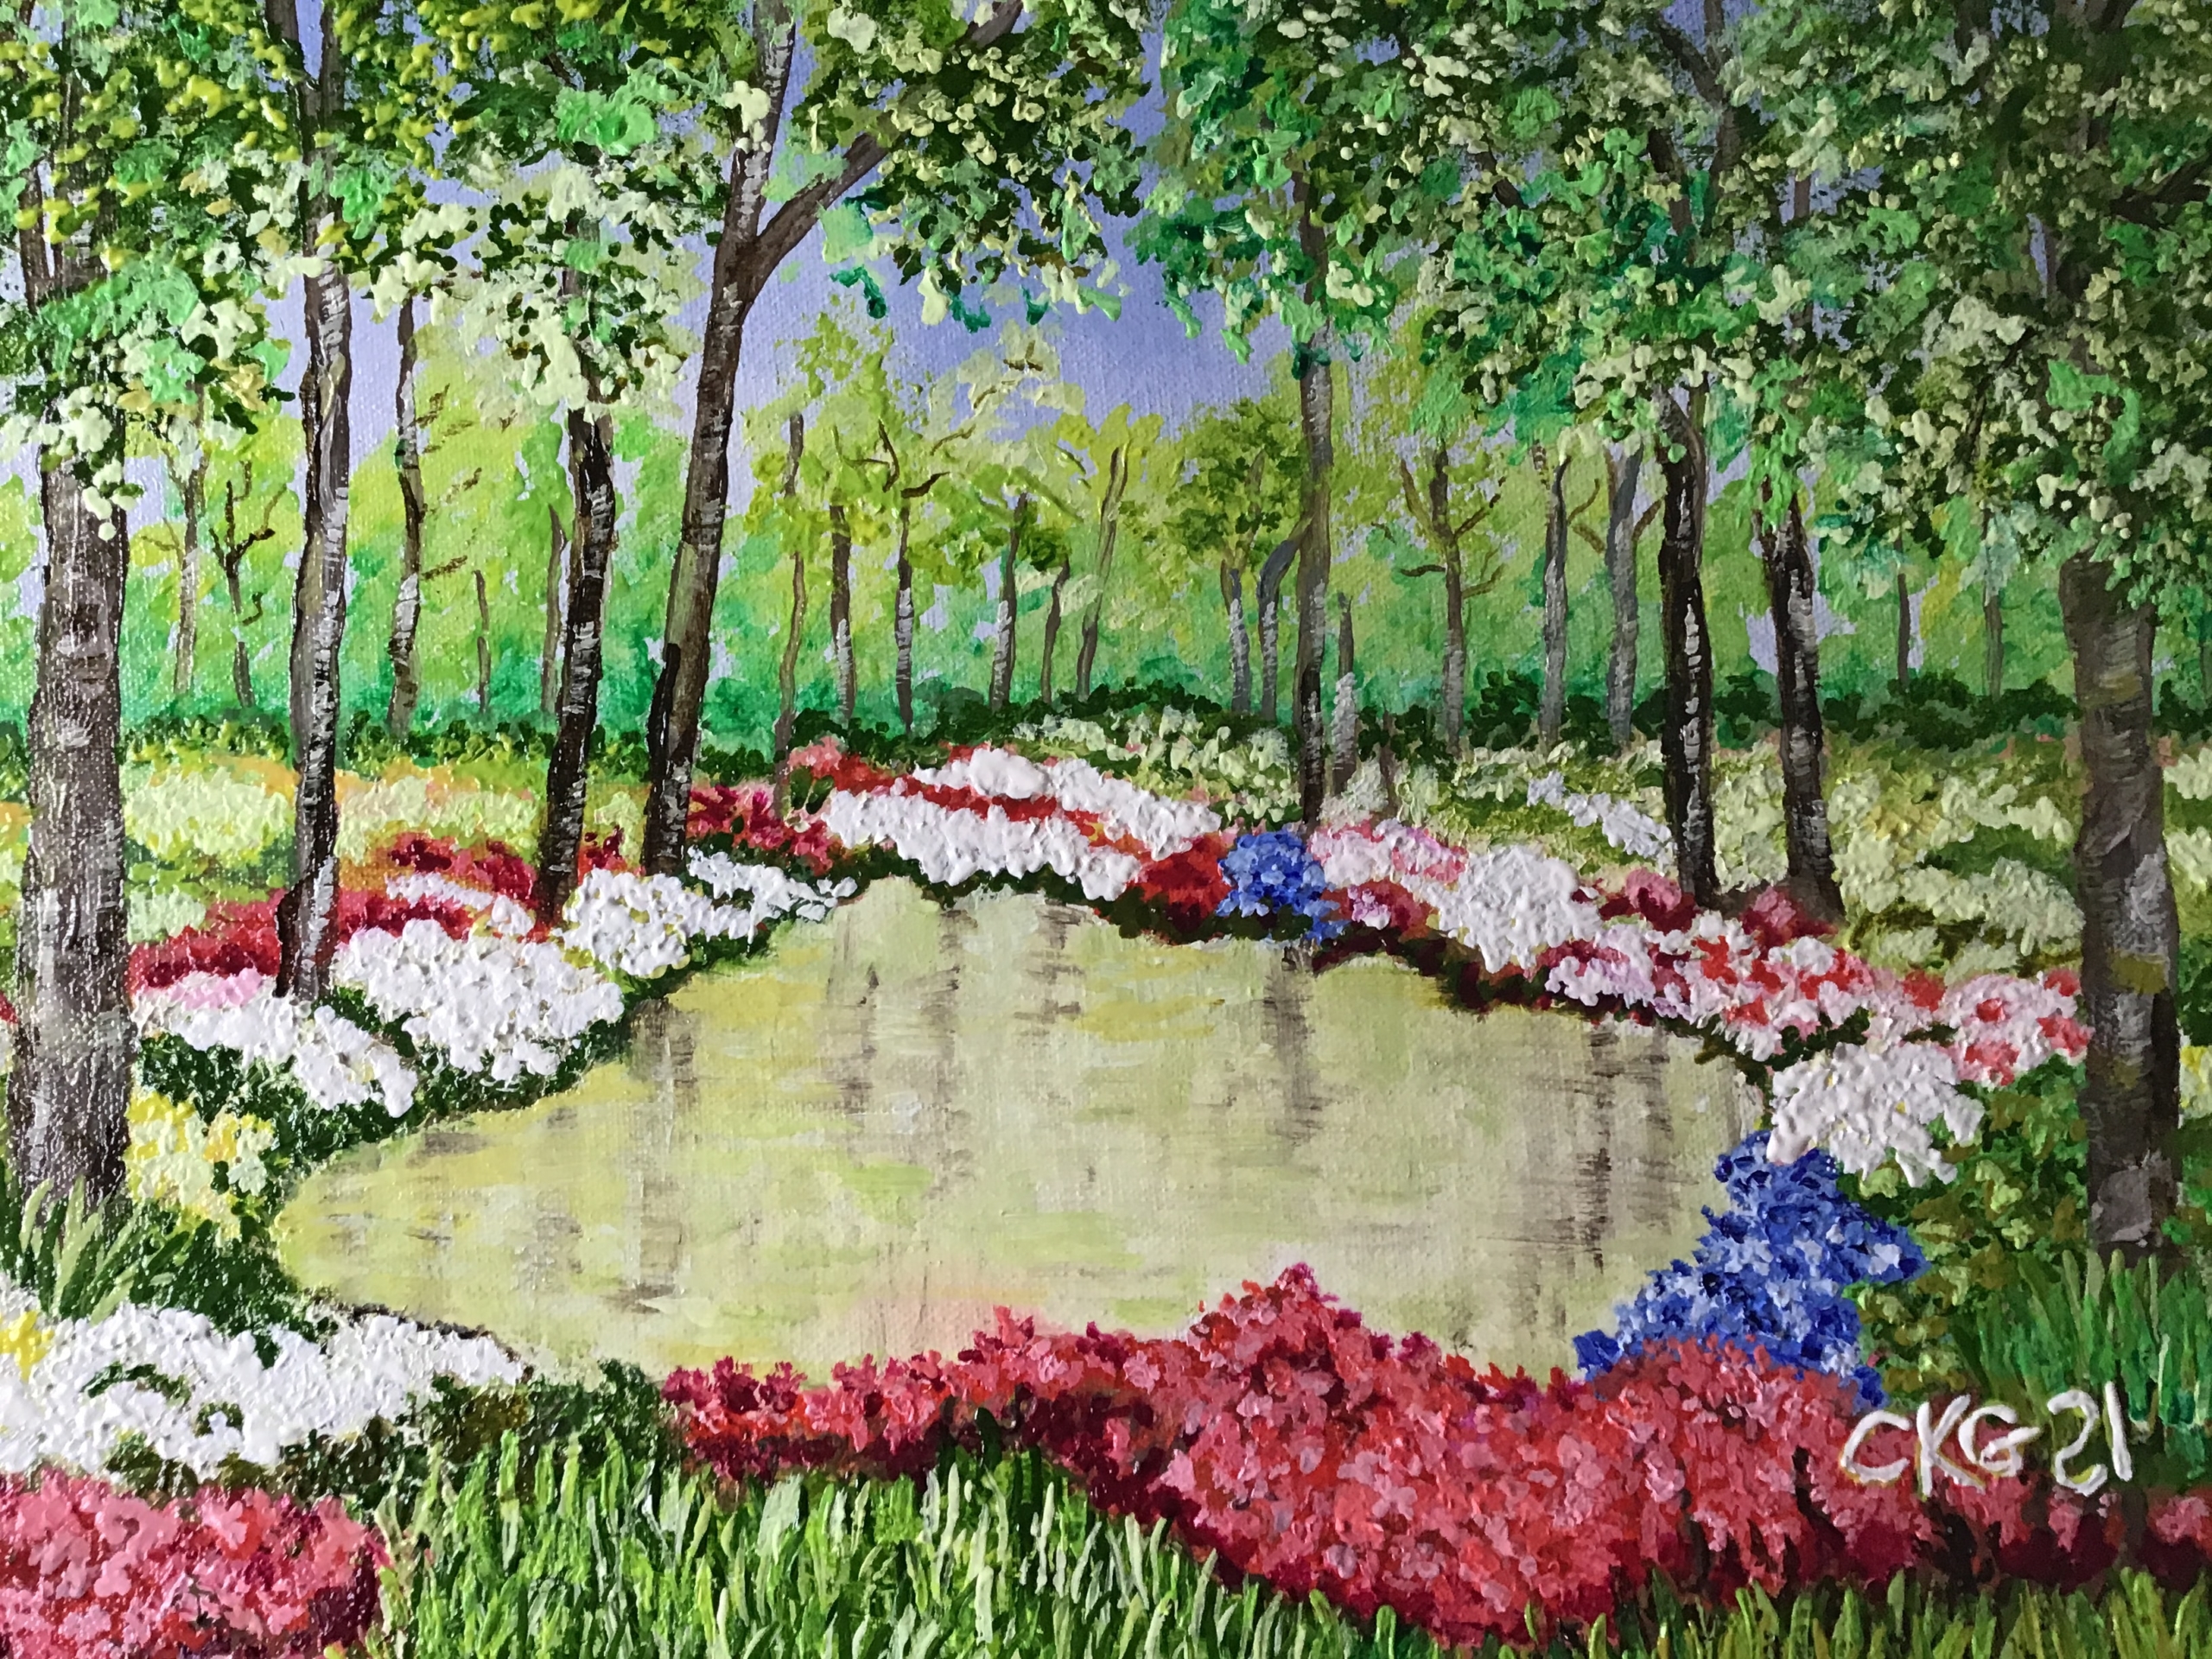 Skizzenhaft gezeichneter Wald mit herzförmigem, mit Blumen umgebenen Teich in der Mitte